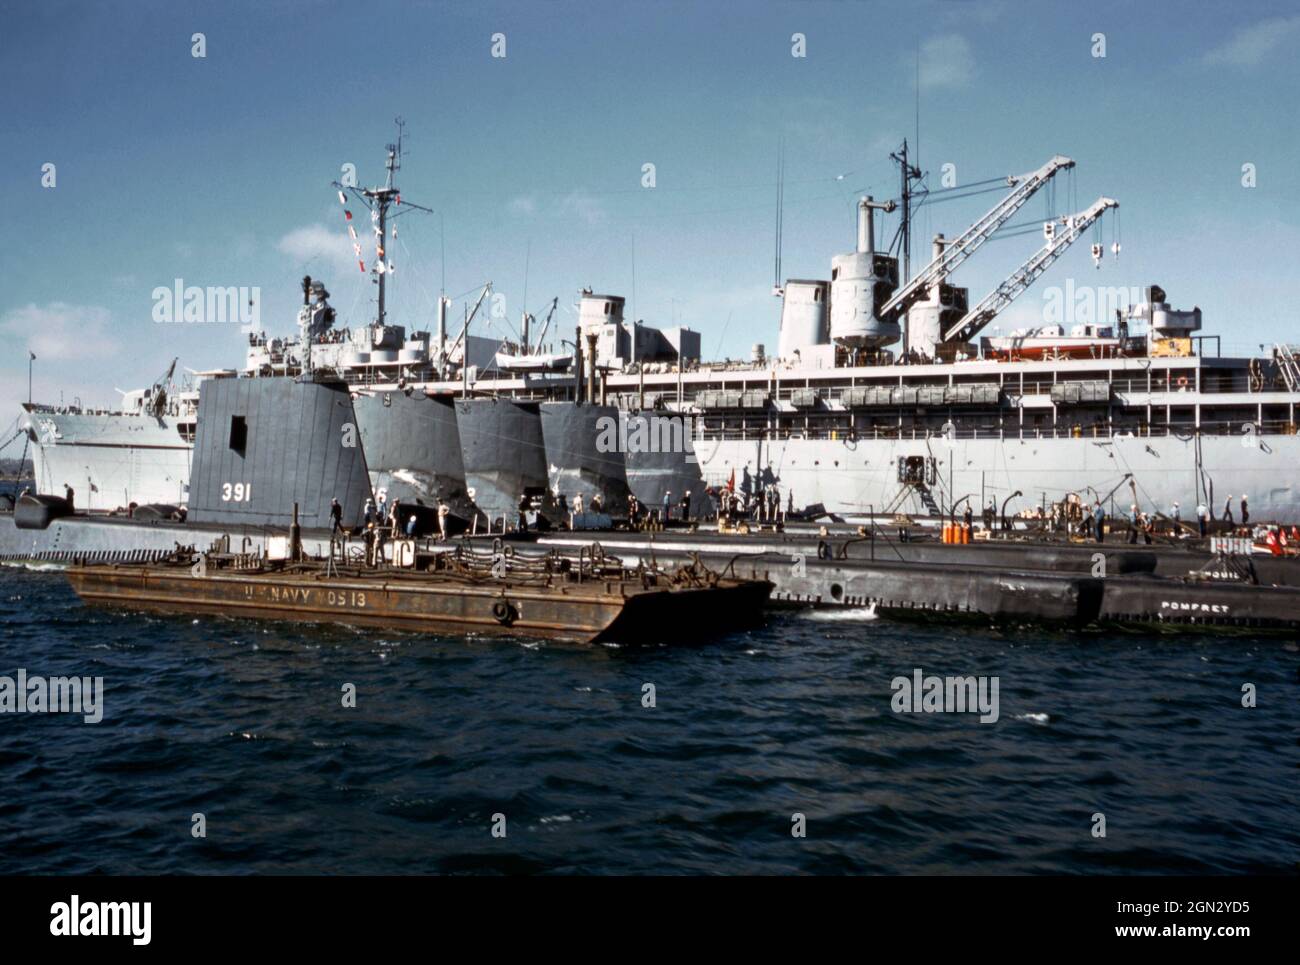 Eine geschäftige Szene der US Navy an den Docks in San Diego, Kalifornien, USA im Jahr 1960. Fünf U-Boote sind aufgereiht. Das nächste ist USS Pomfret (SS-391), ein U-Boot der Balao-Klasse, benannt nach dem Pomfret, einem Fisch der Seabream-Familie, einem mächtigen und schnellen Schwimmer. Pomfret wurde 1943 auf der Portsmouth Navy Yard, Kittery, Maine, USA, ins Leben gerufen und im nächsten Jahr in Betrieb genommen. Hinter den U-Booten ist ein Marinestützer zu sehen. Dieses Bild stammt von einem alten Kodak-Amateurfotograf mit Farbtransparenz – einem alten Foto aus den 1960er Jahren. Stockfoto